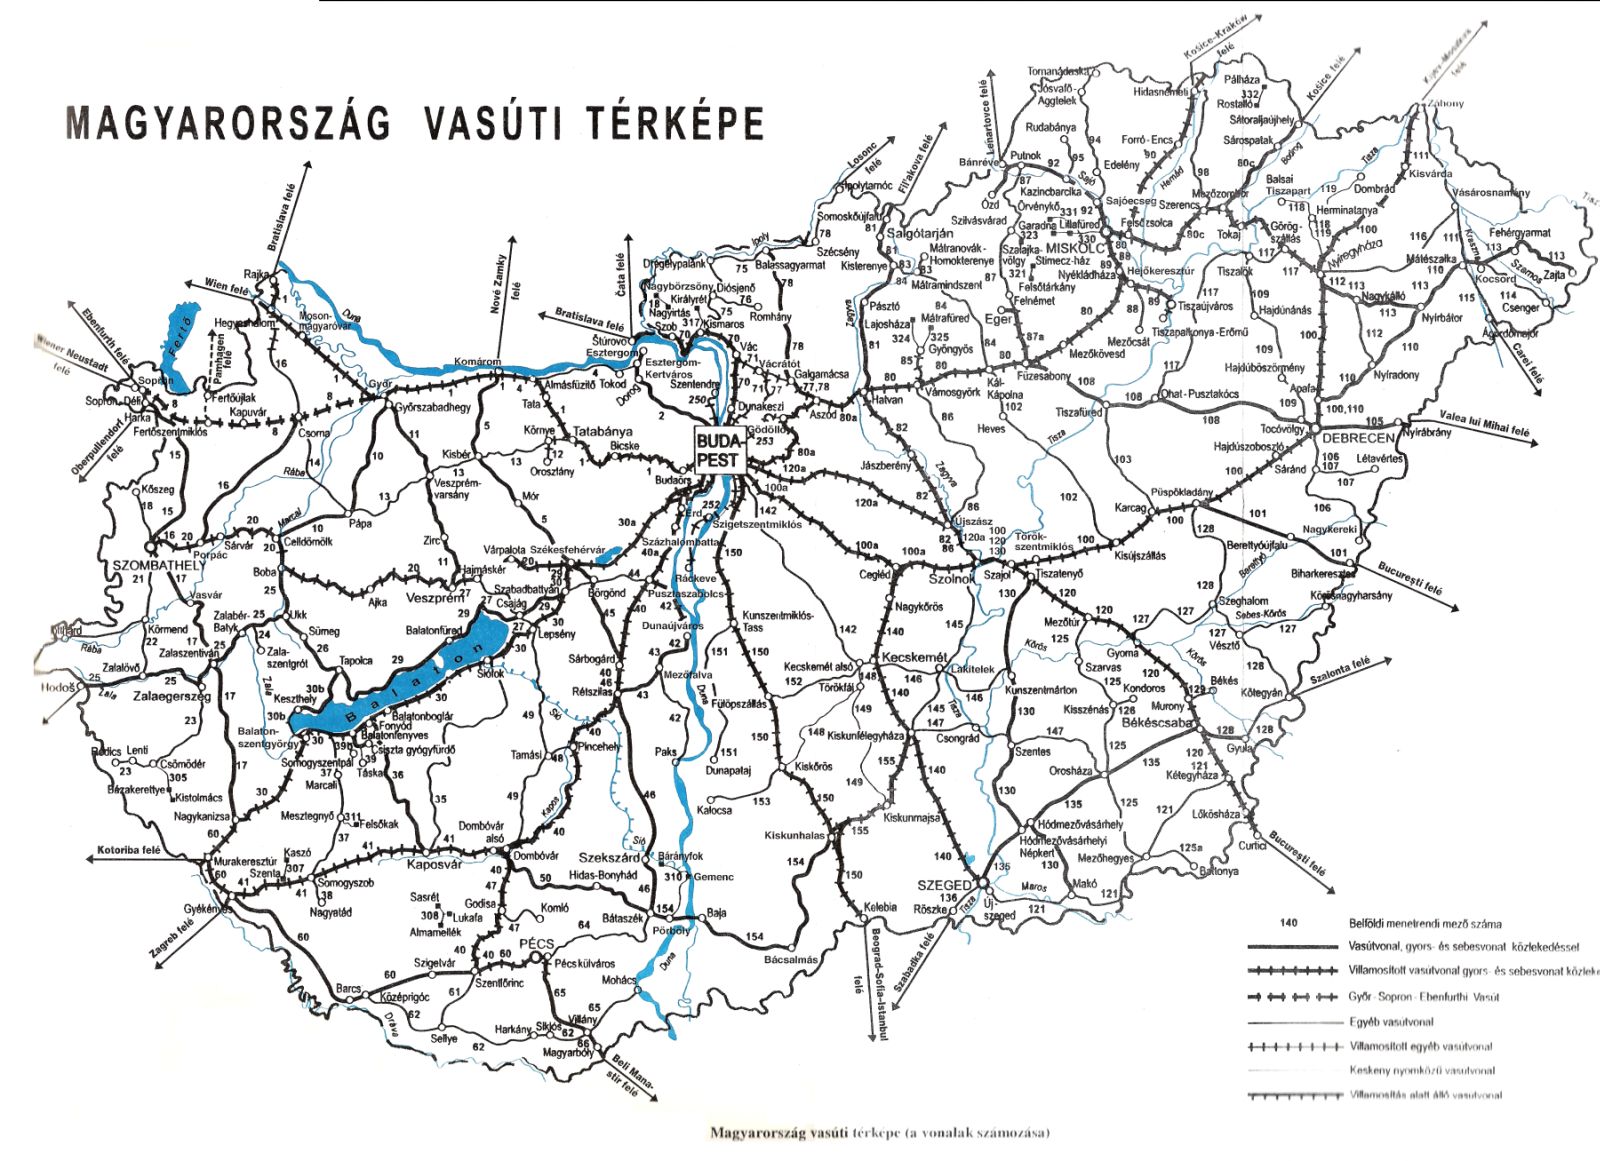 Railway network of Hungary